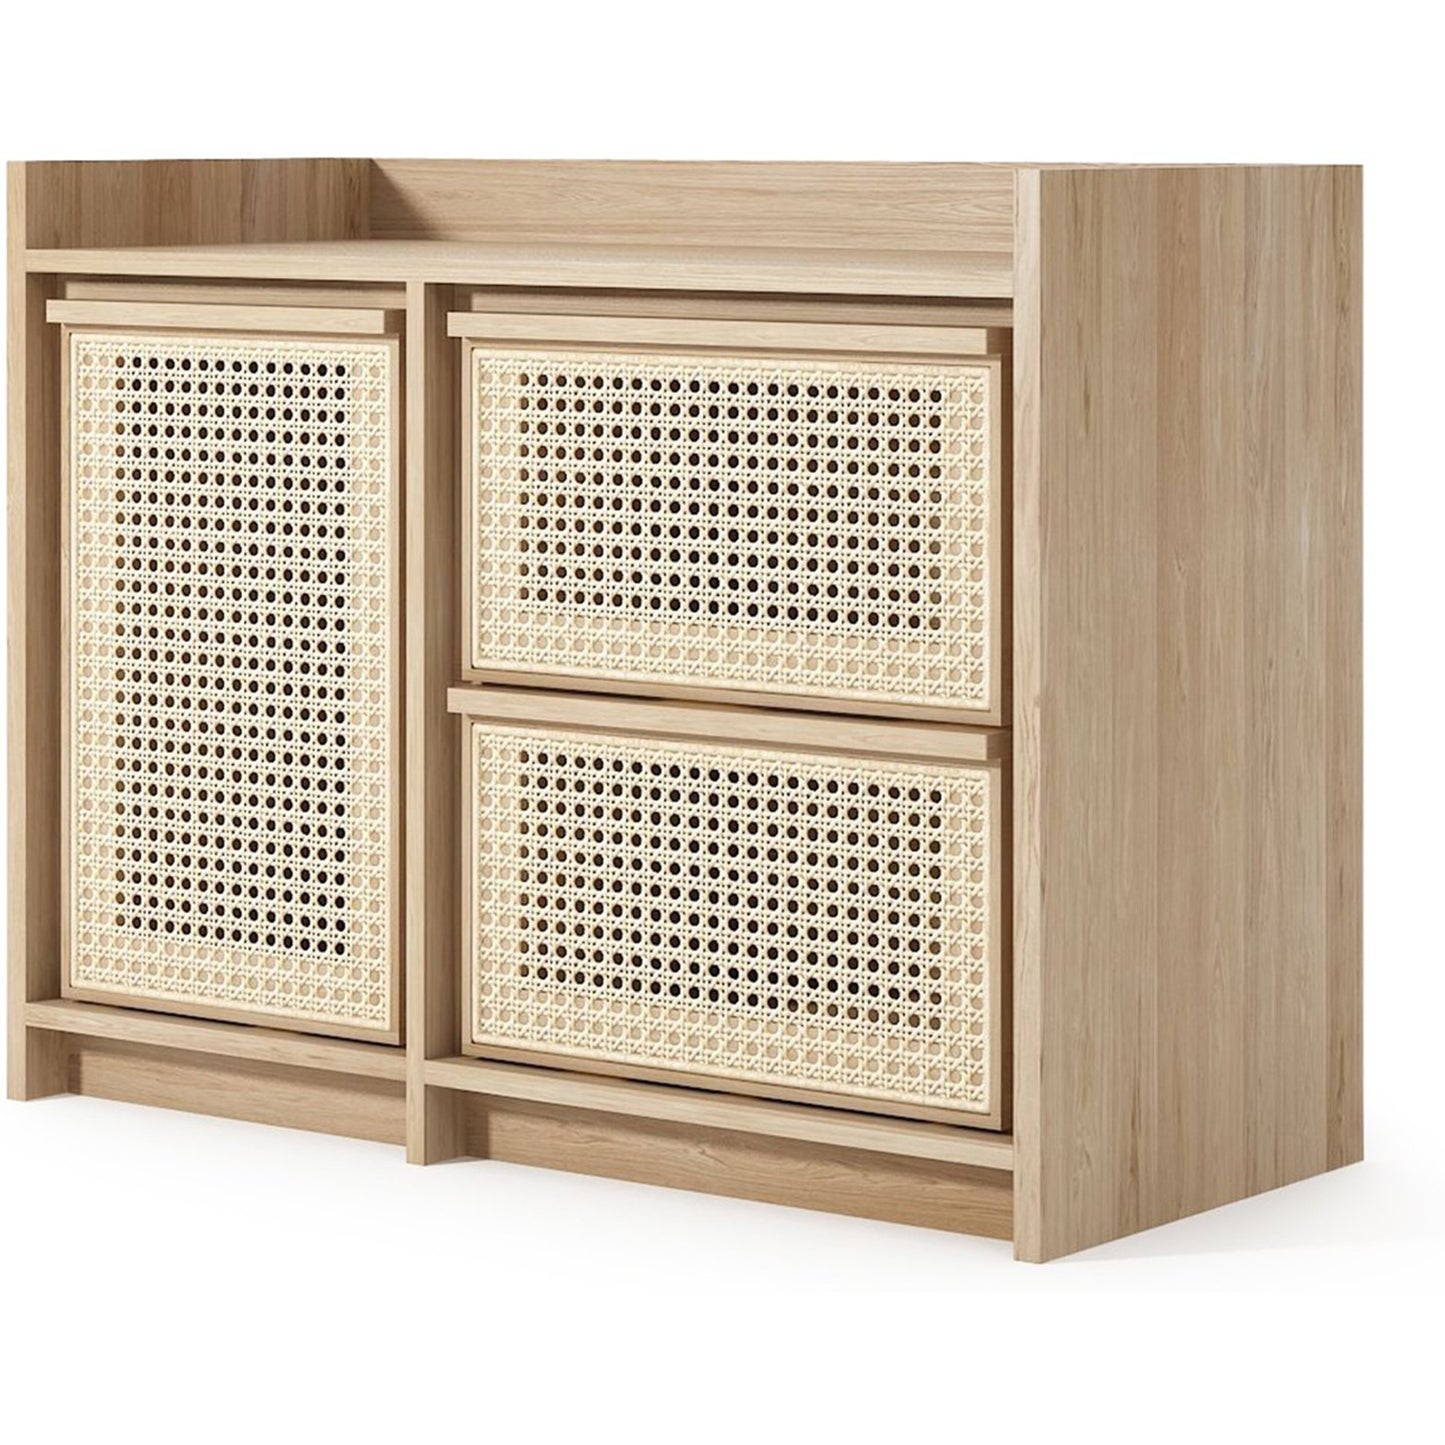 Roots Sideboard - European Oak | SLH Designer Furniture-Indoor Furniture-Karpenter-Neutral Oak Wood-European Oak-Natural Oil-based-SLH AU